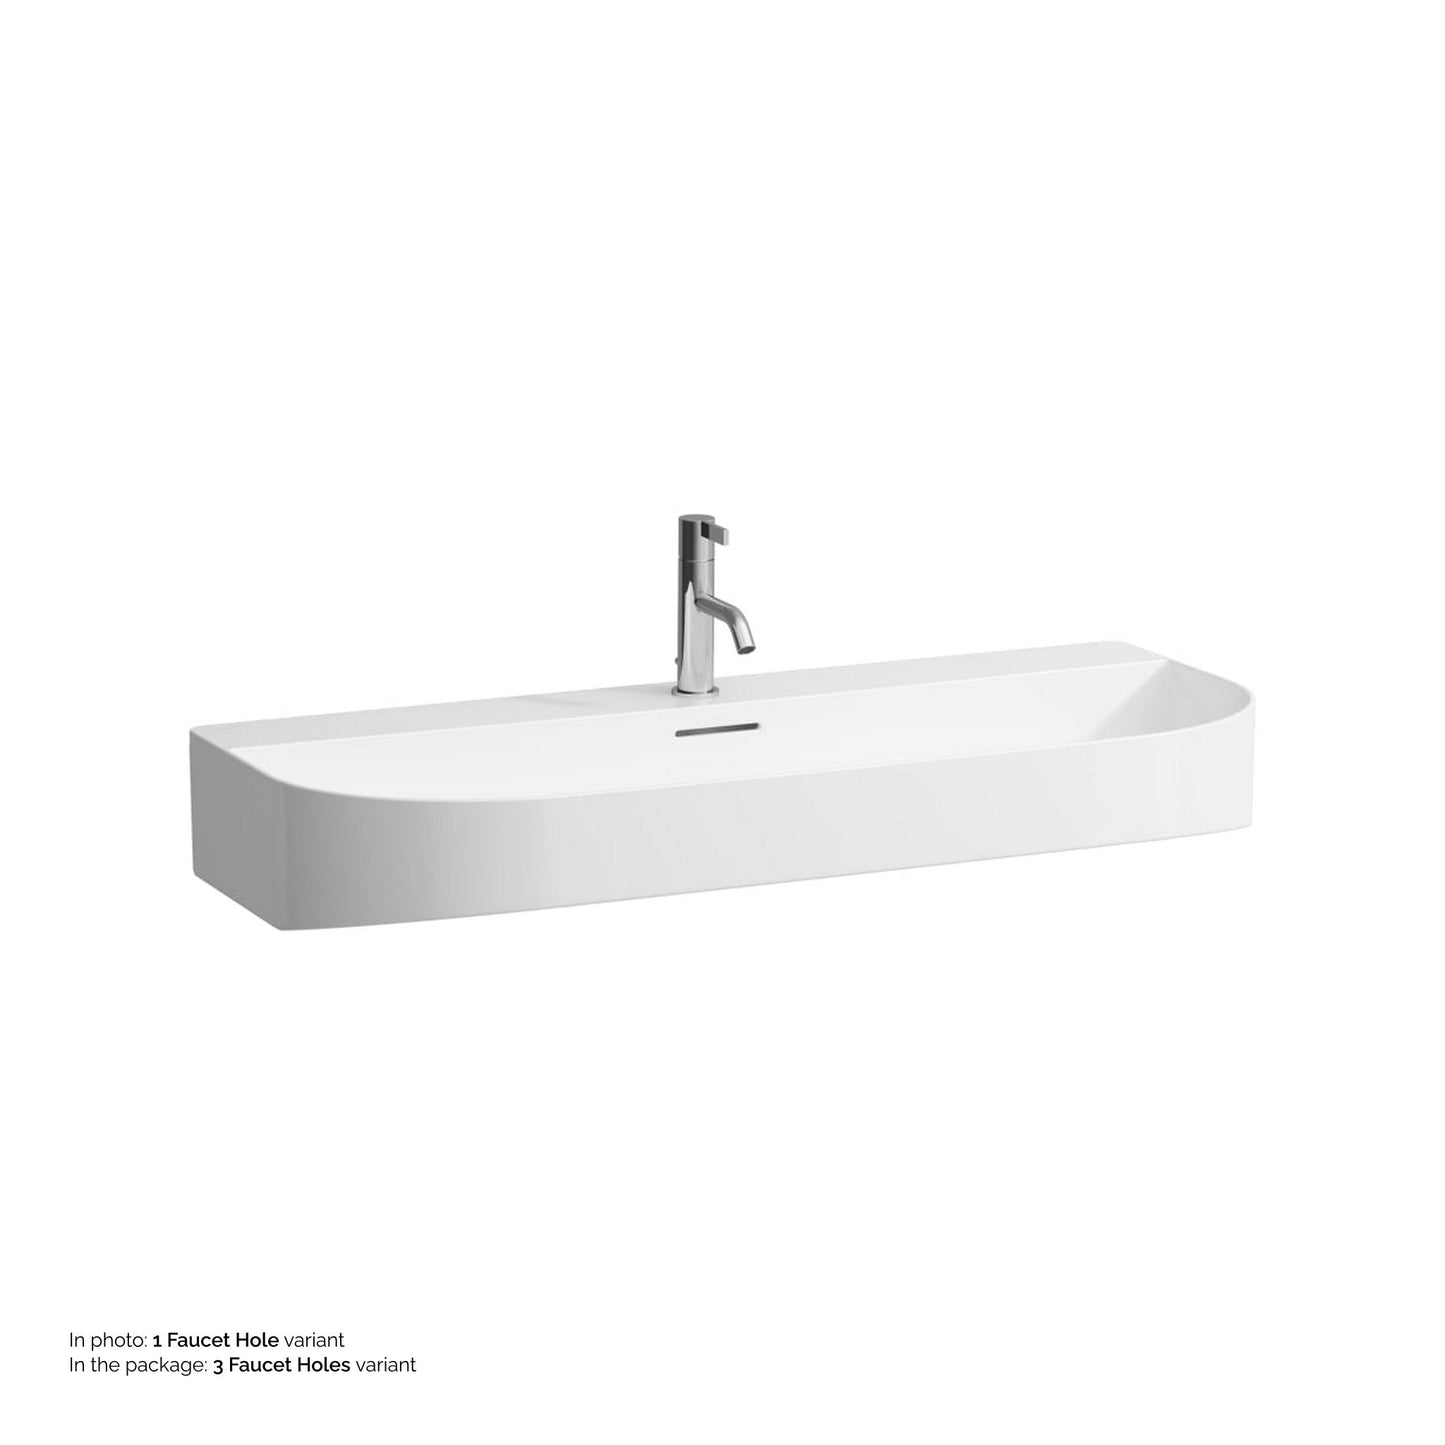 Laufen Sonar 39" White Ceramic Countertop Bathroom Sink With 8" Spread 3 Faucet Holes